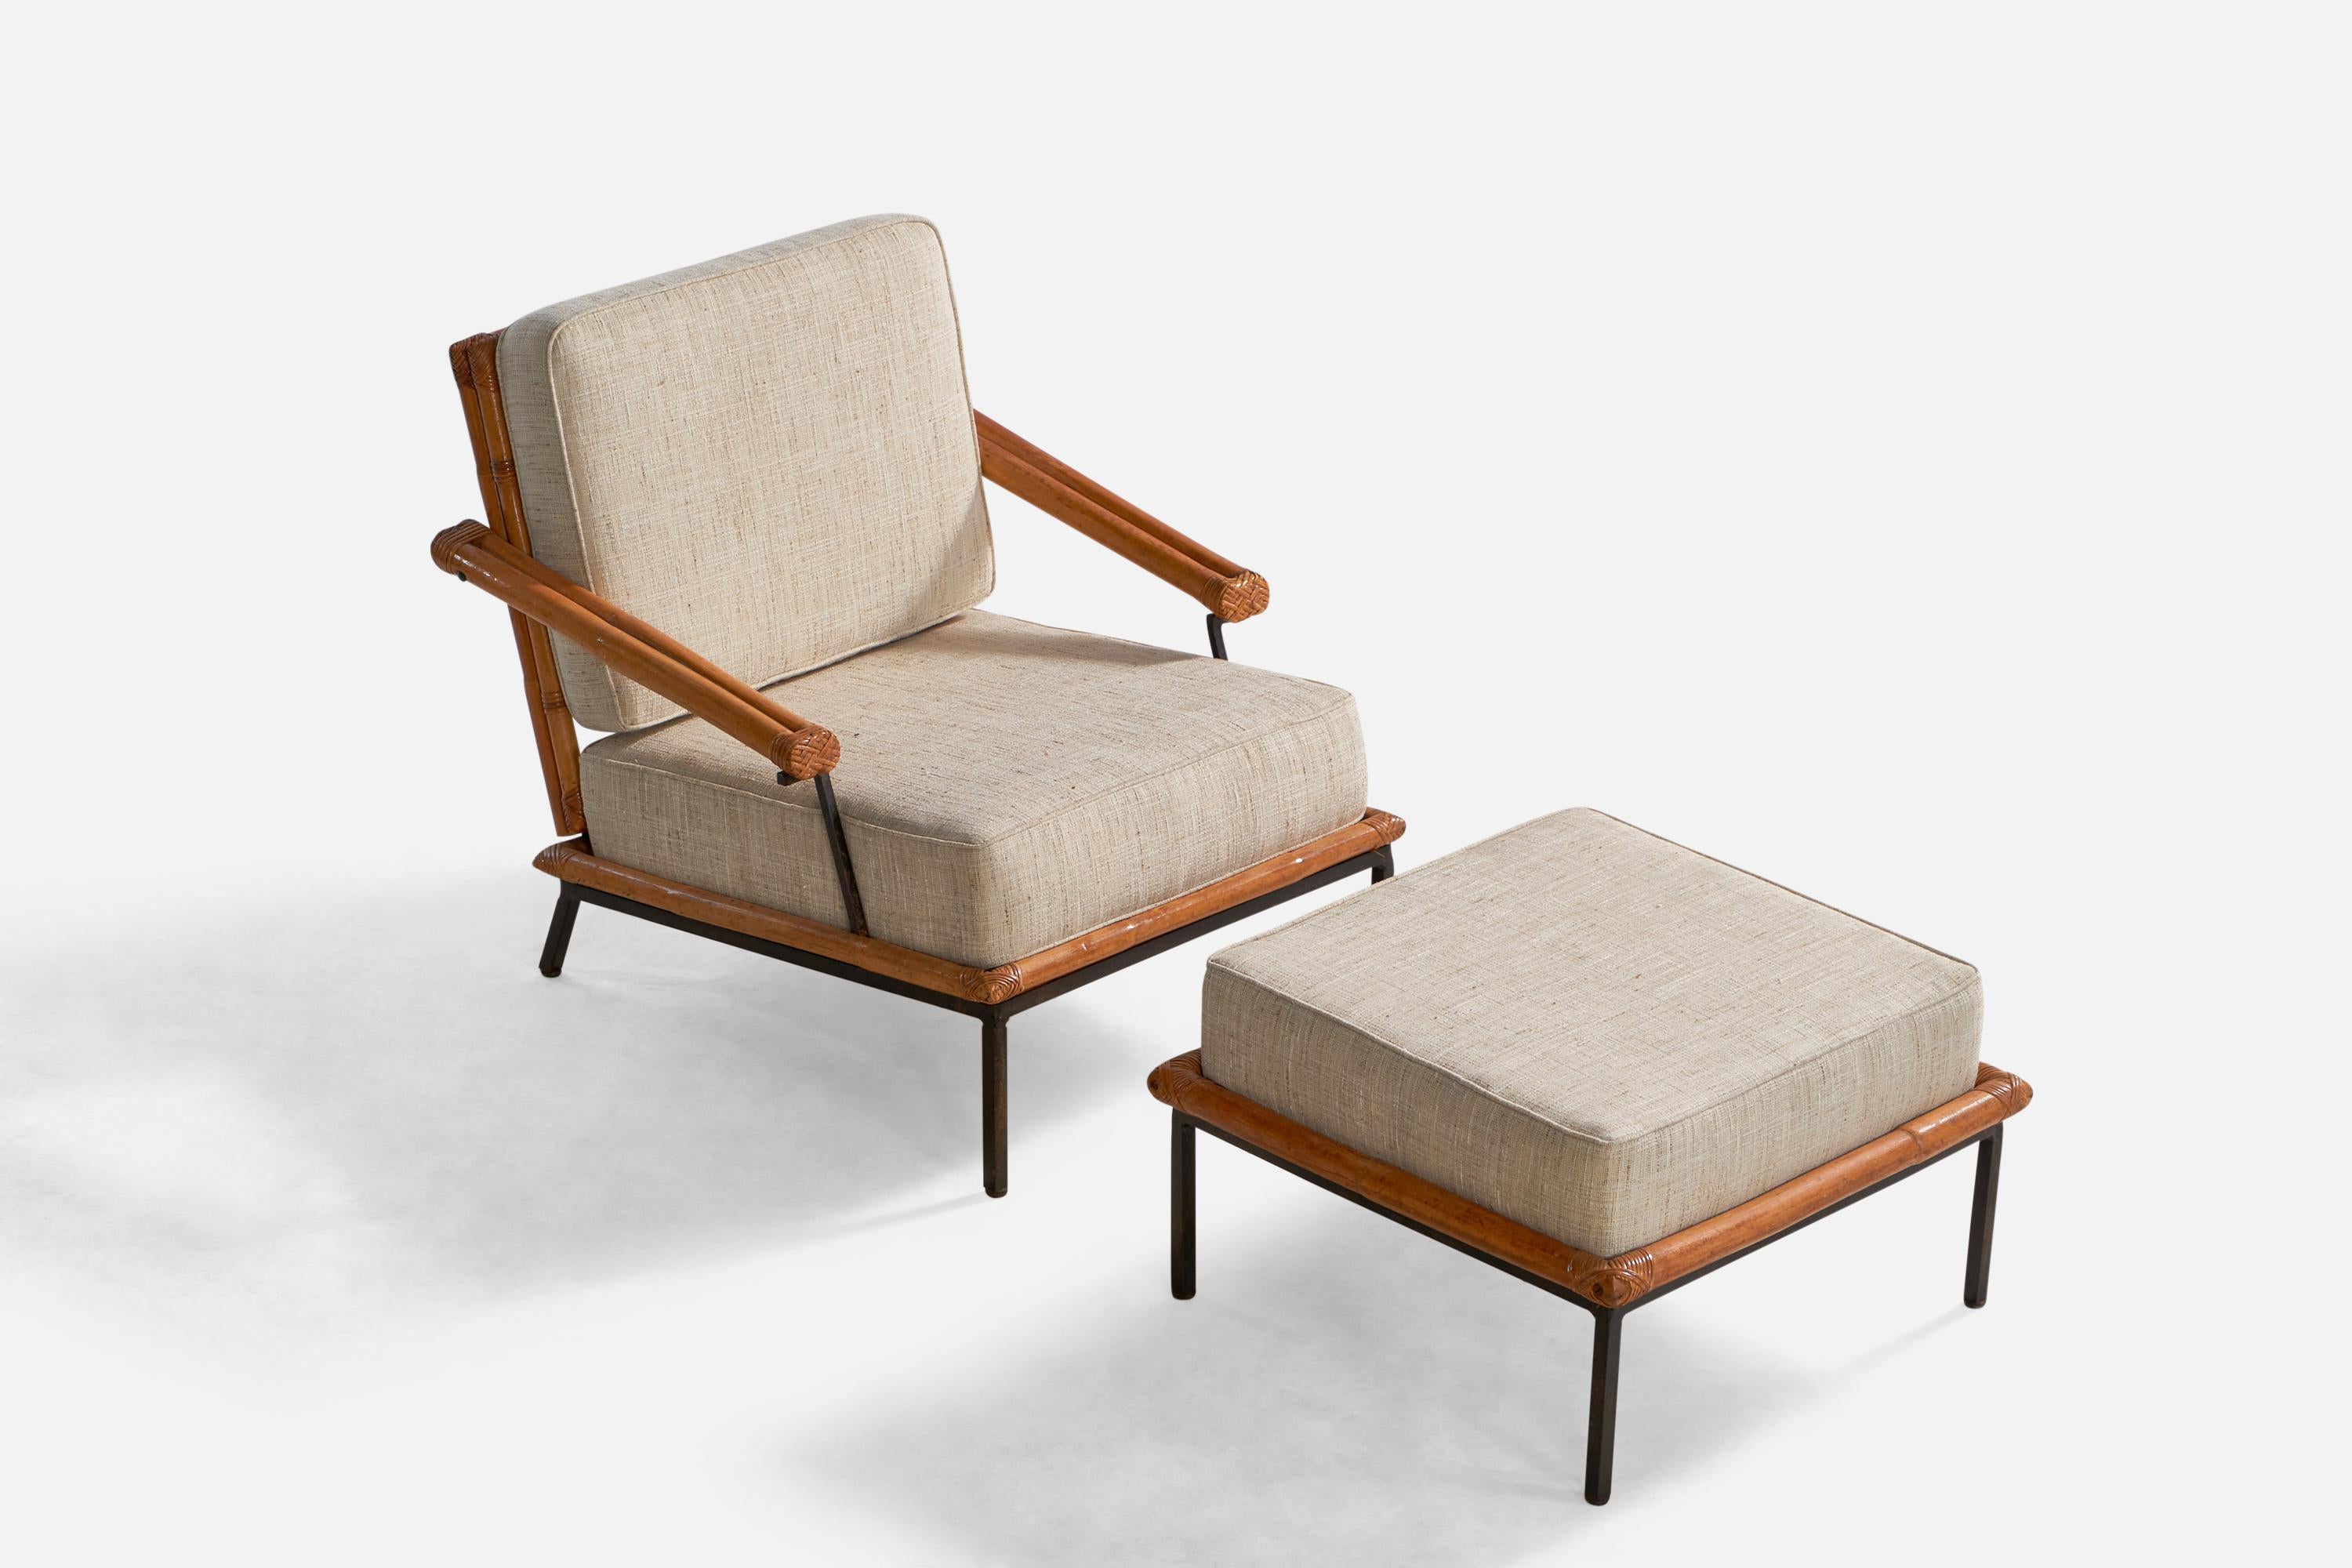 Ein Loungesessel aus schwarz lackiertem Eisen, Bambus und cremefarbenem Stoff mit Ottomane, entworfen und hergestellt in den USA, 1950er Jahre. 

Sitzhöhe: 15.75